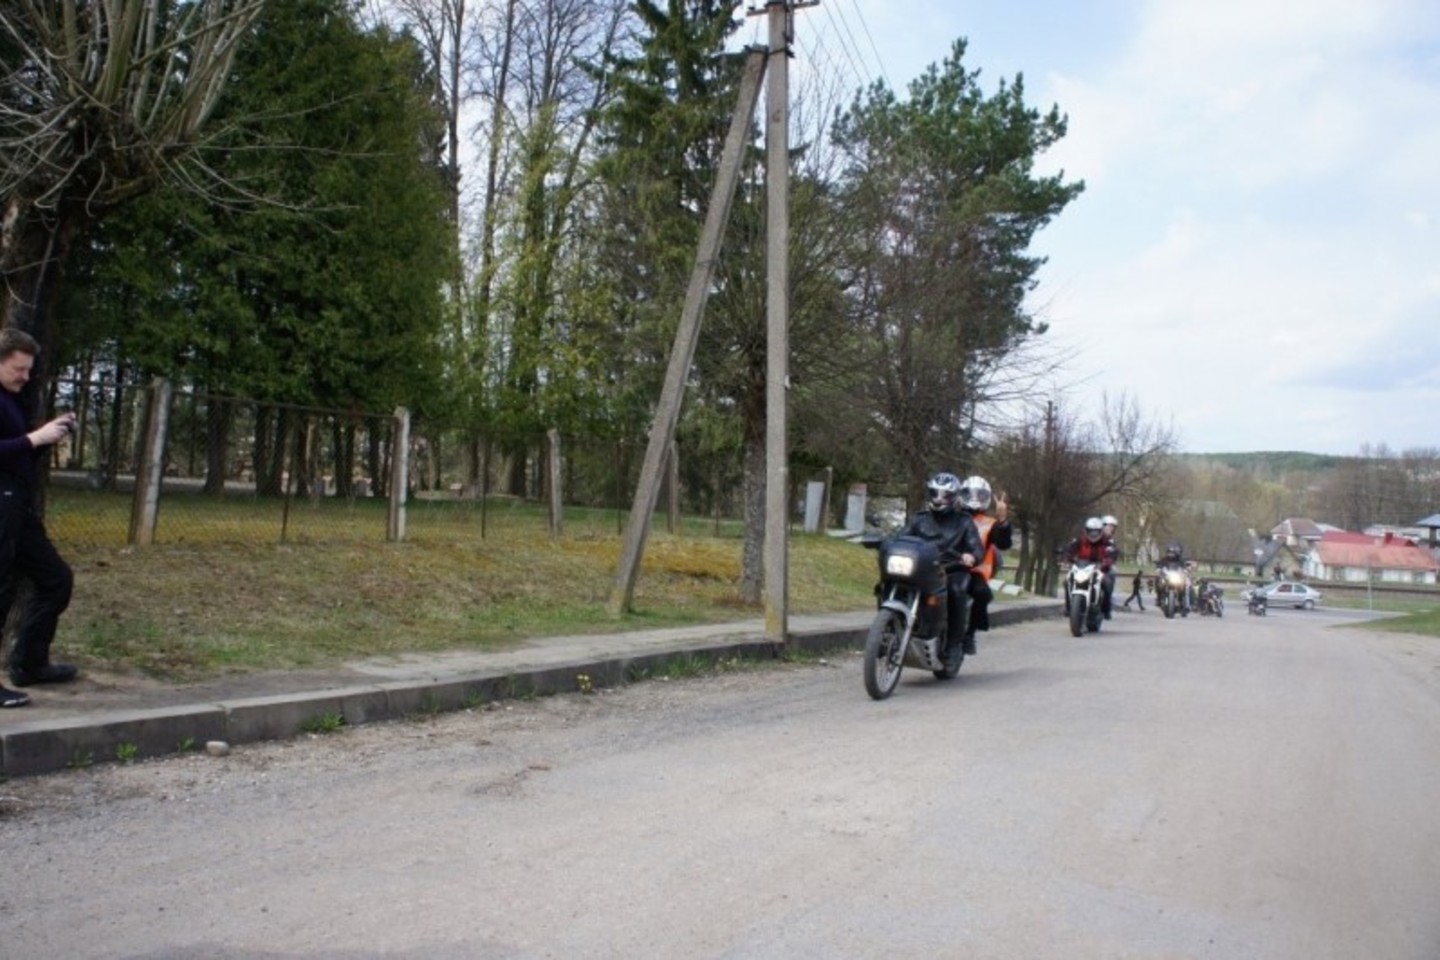 Lietuvos motociklistų klubas daug dėmesio skiria saugiam eismui.<br>LMK nuotr.